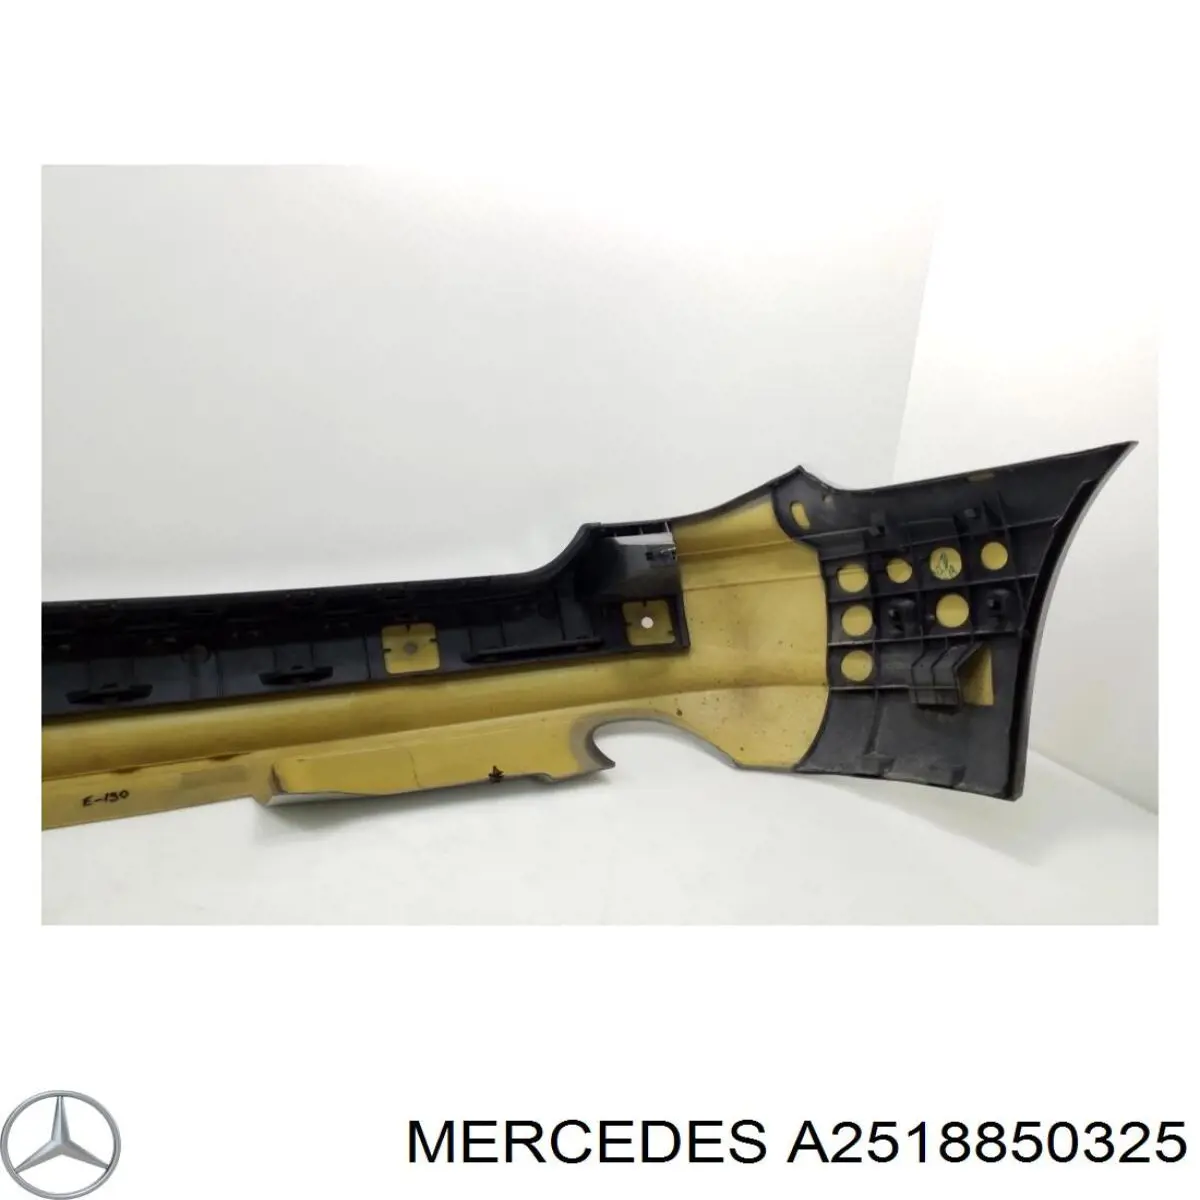 25188503259999 Mercedes parachoques trasero